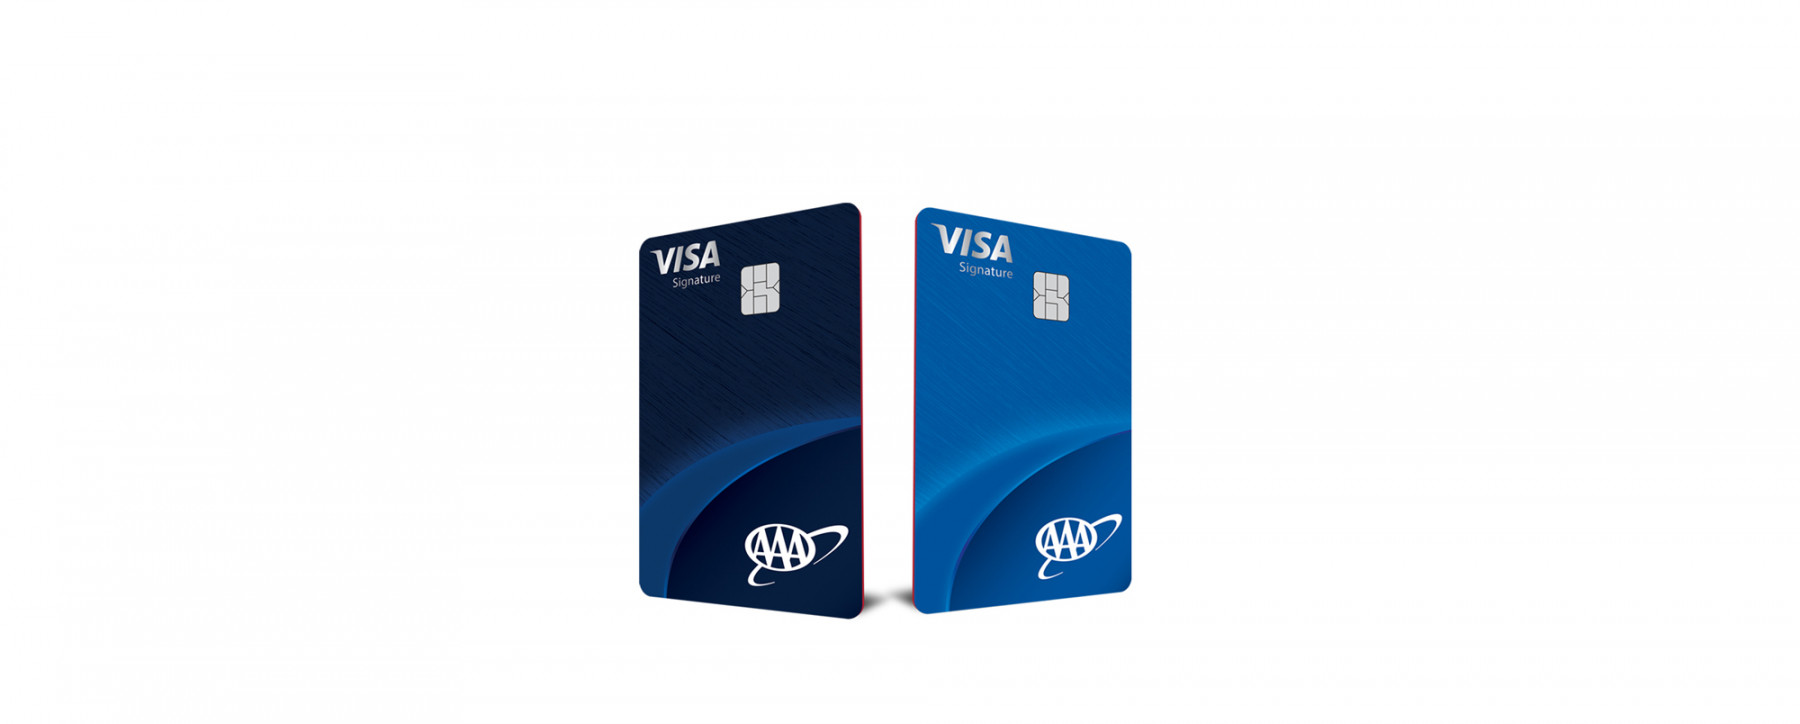 Credit card Visa Signature